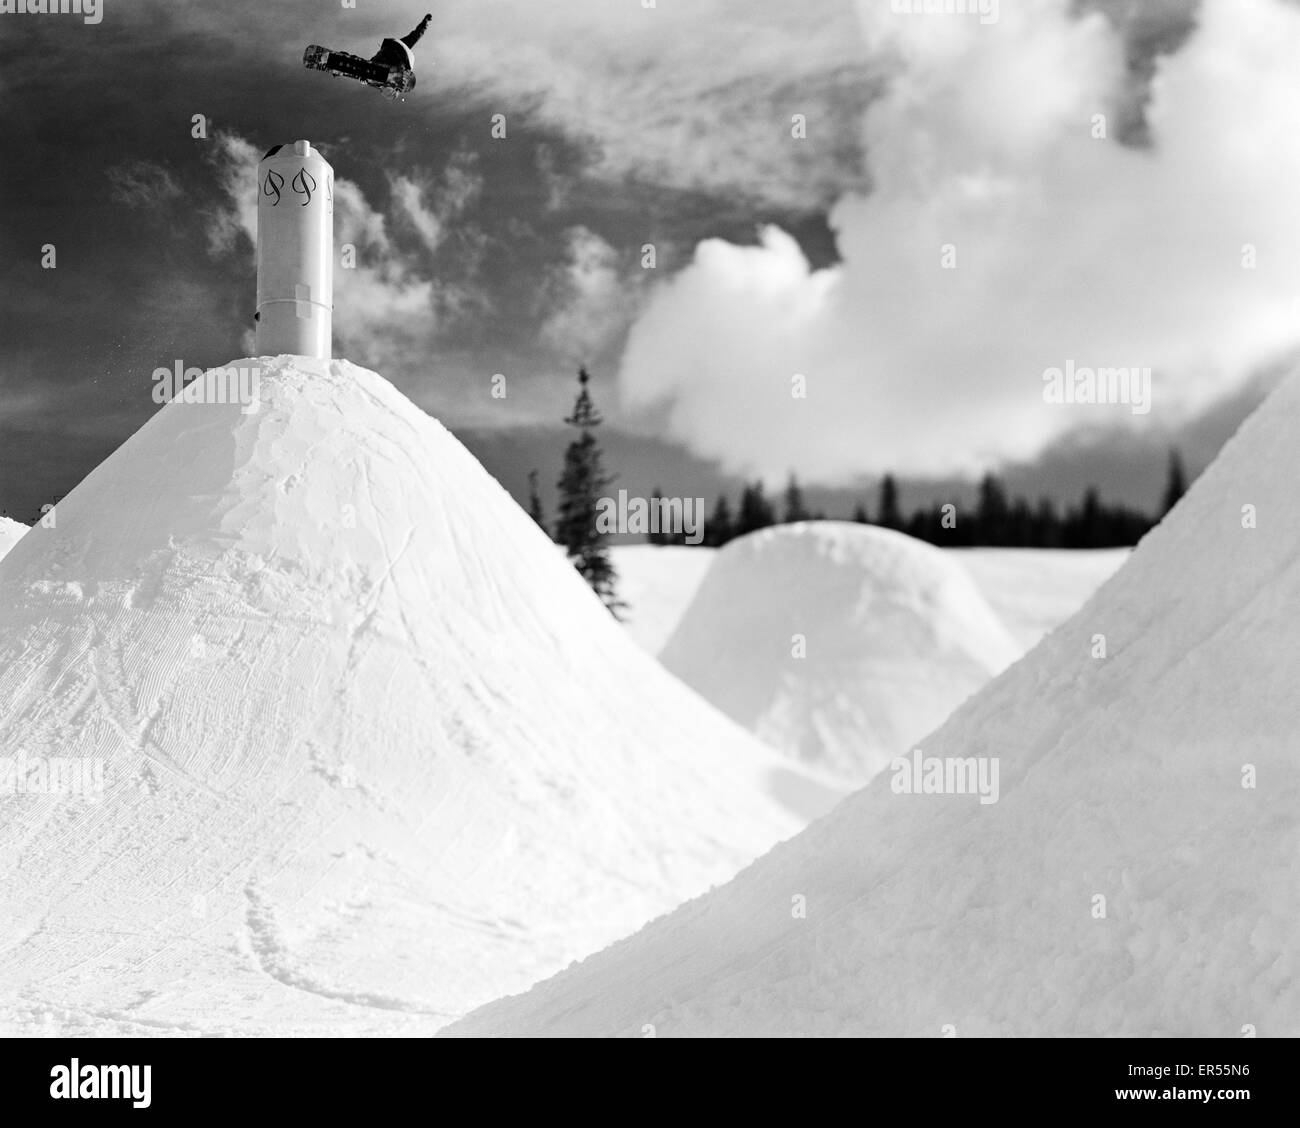 Ein Snowboarder springt über ein Feature in Aspen, Colorado während der Dreharbeiten zu "Art of Flight". Stockfoto